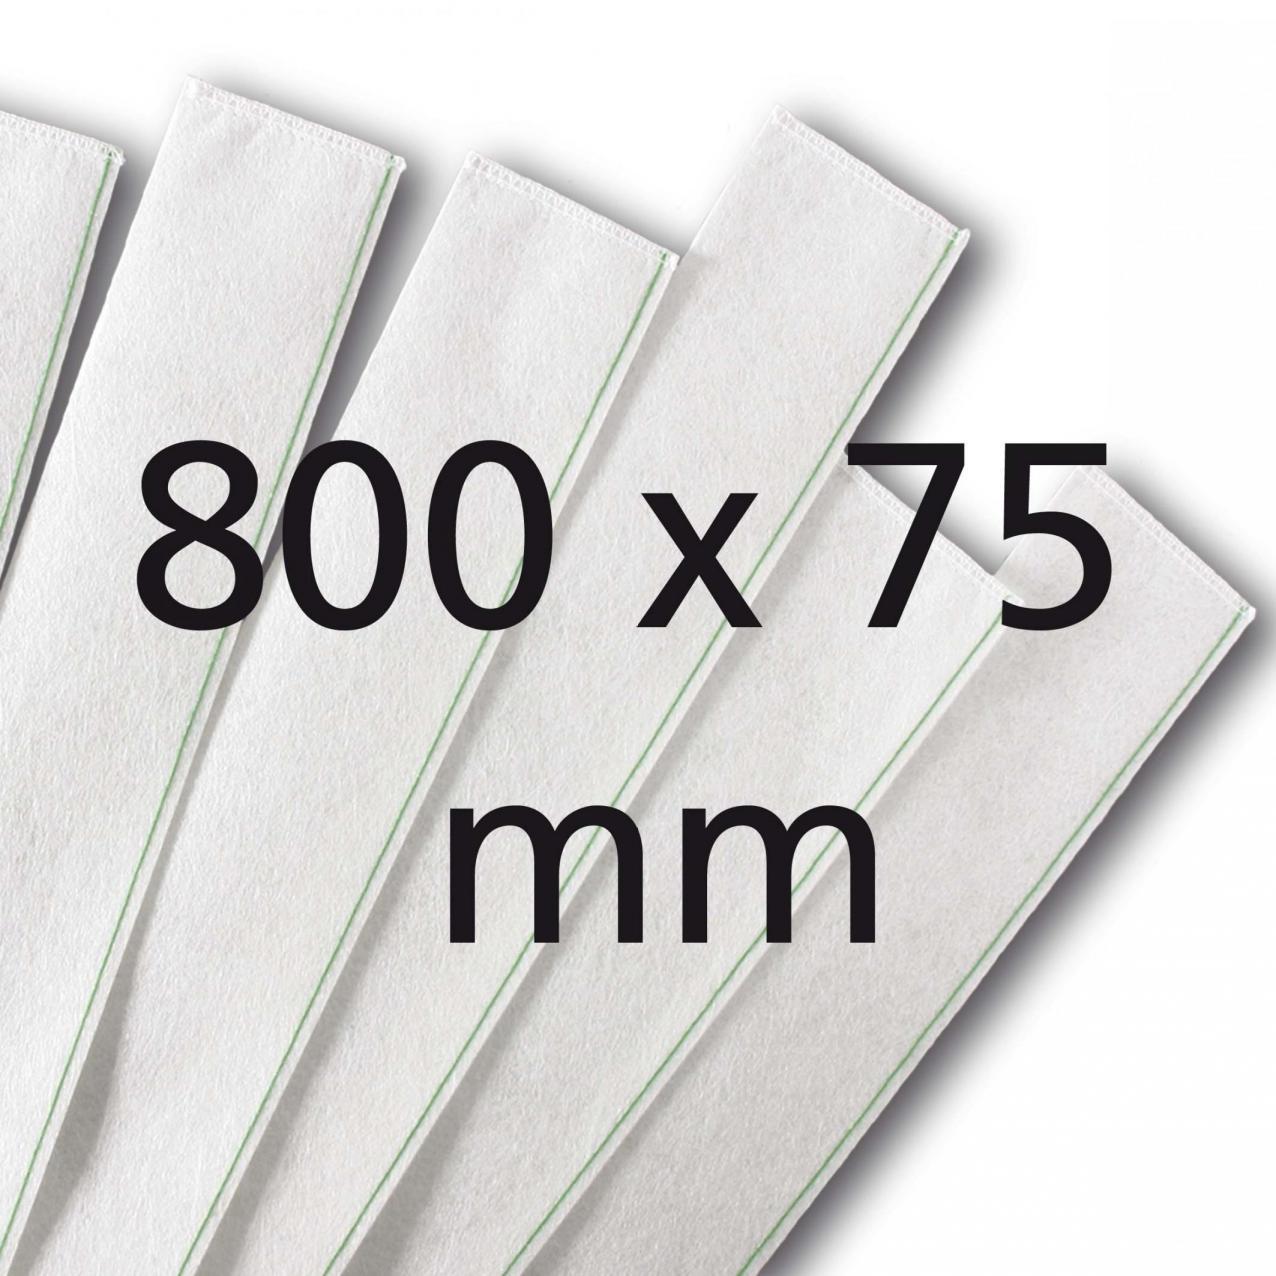 Filtre SE 800 GEA (800x75mm)